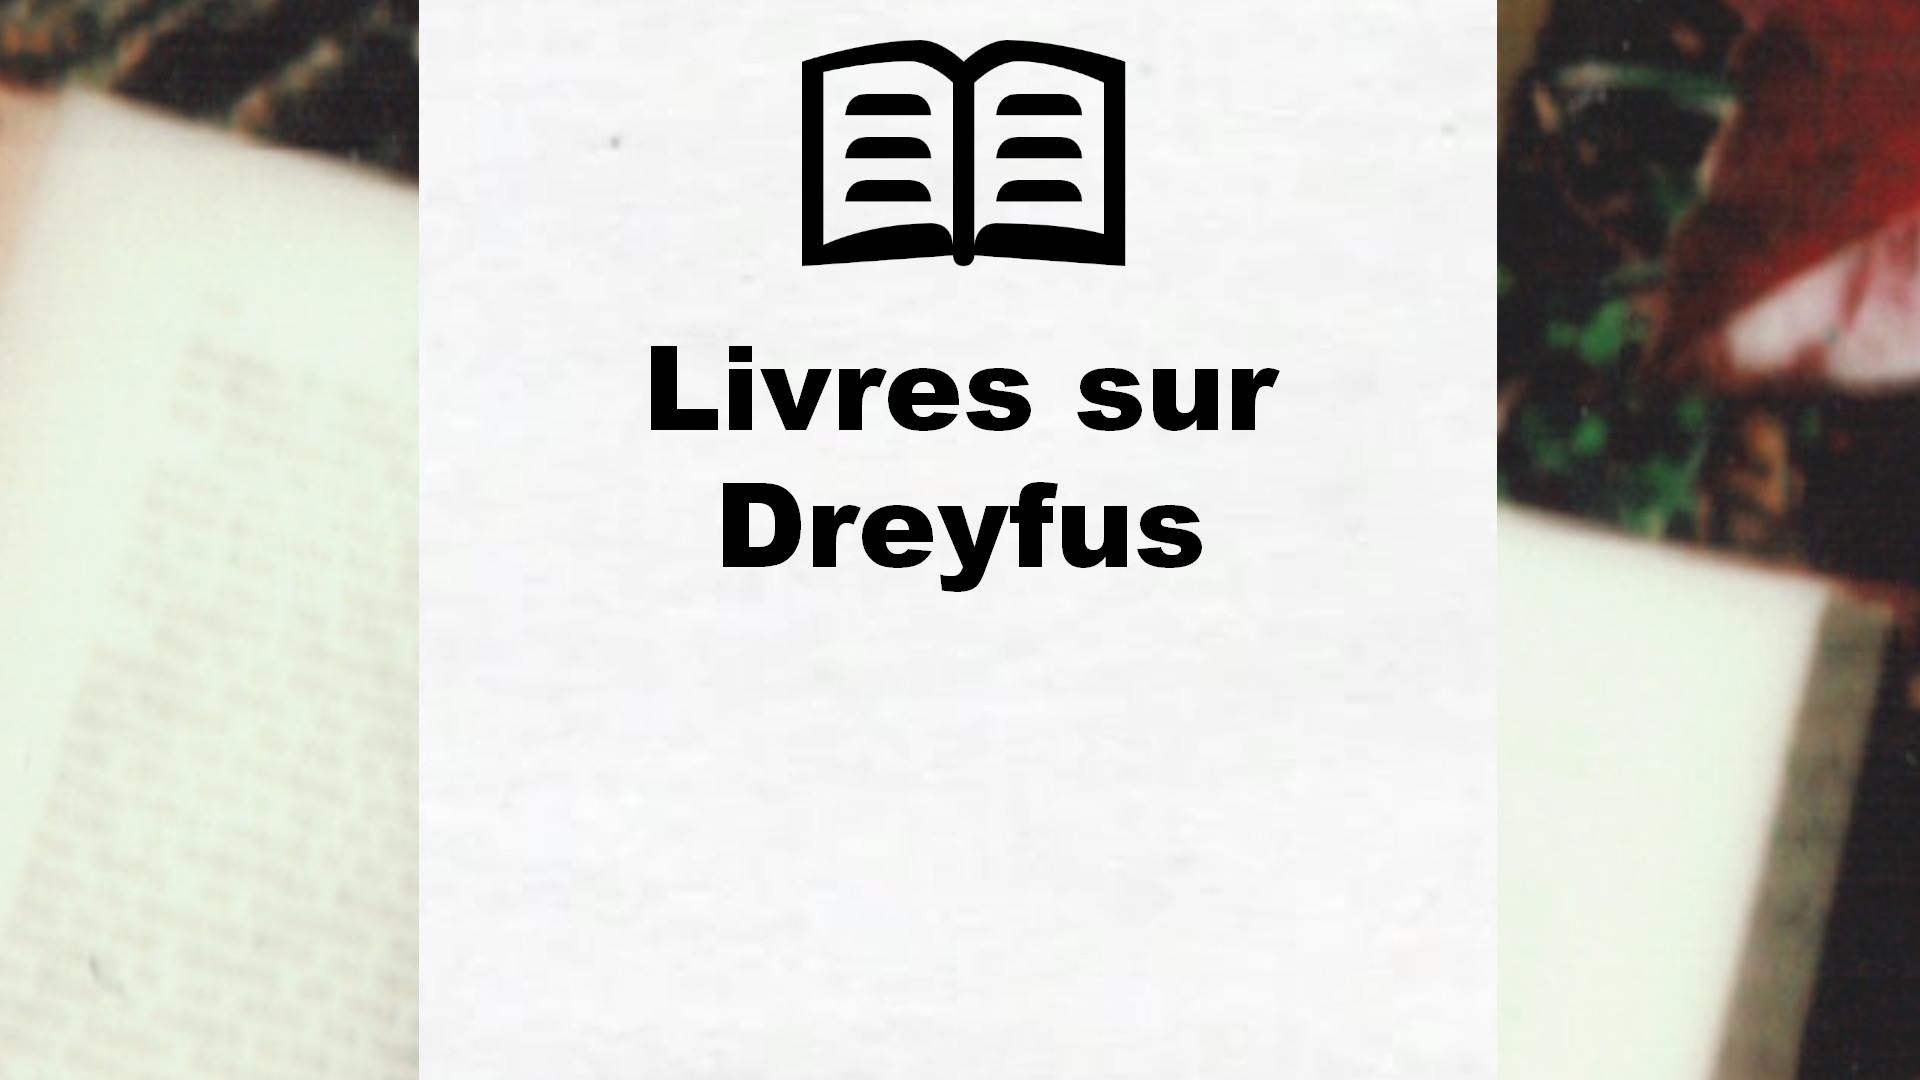 Livres sur Dreyfus